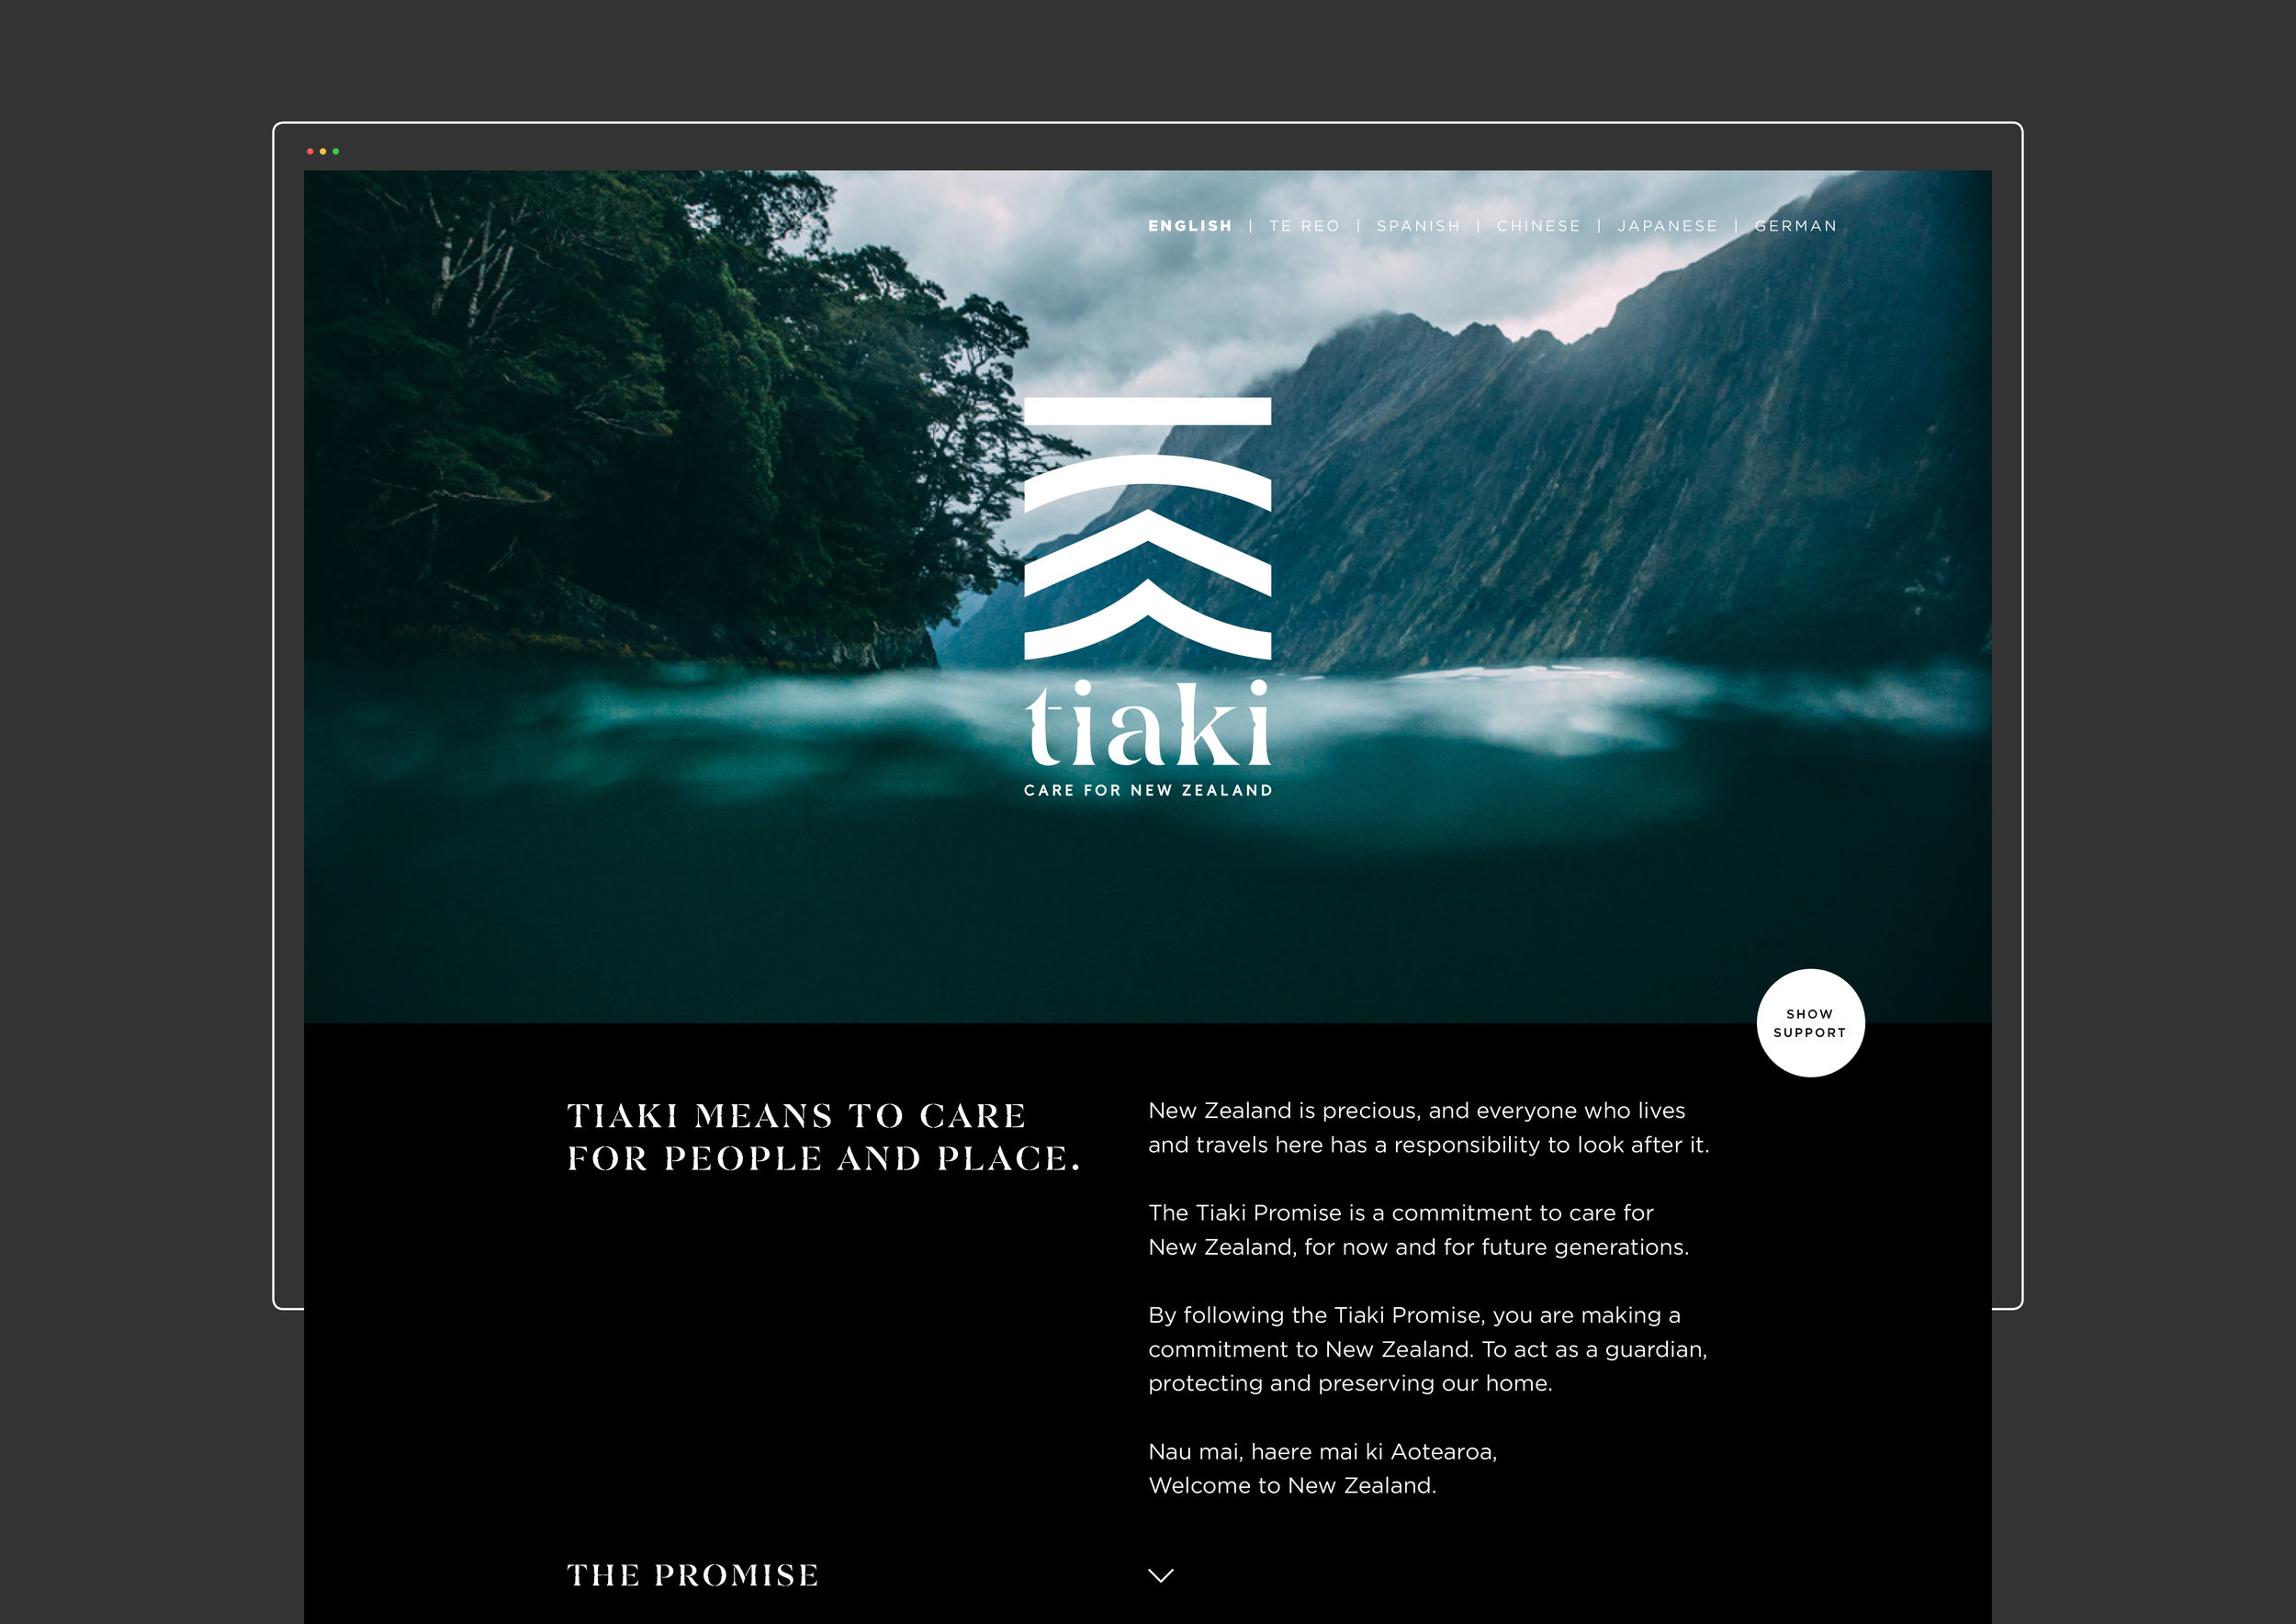 Tiaki-Promise-Design-Works-Lola-Photography-8.jpg